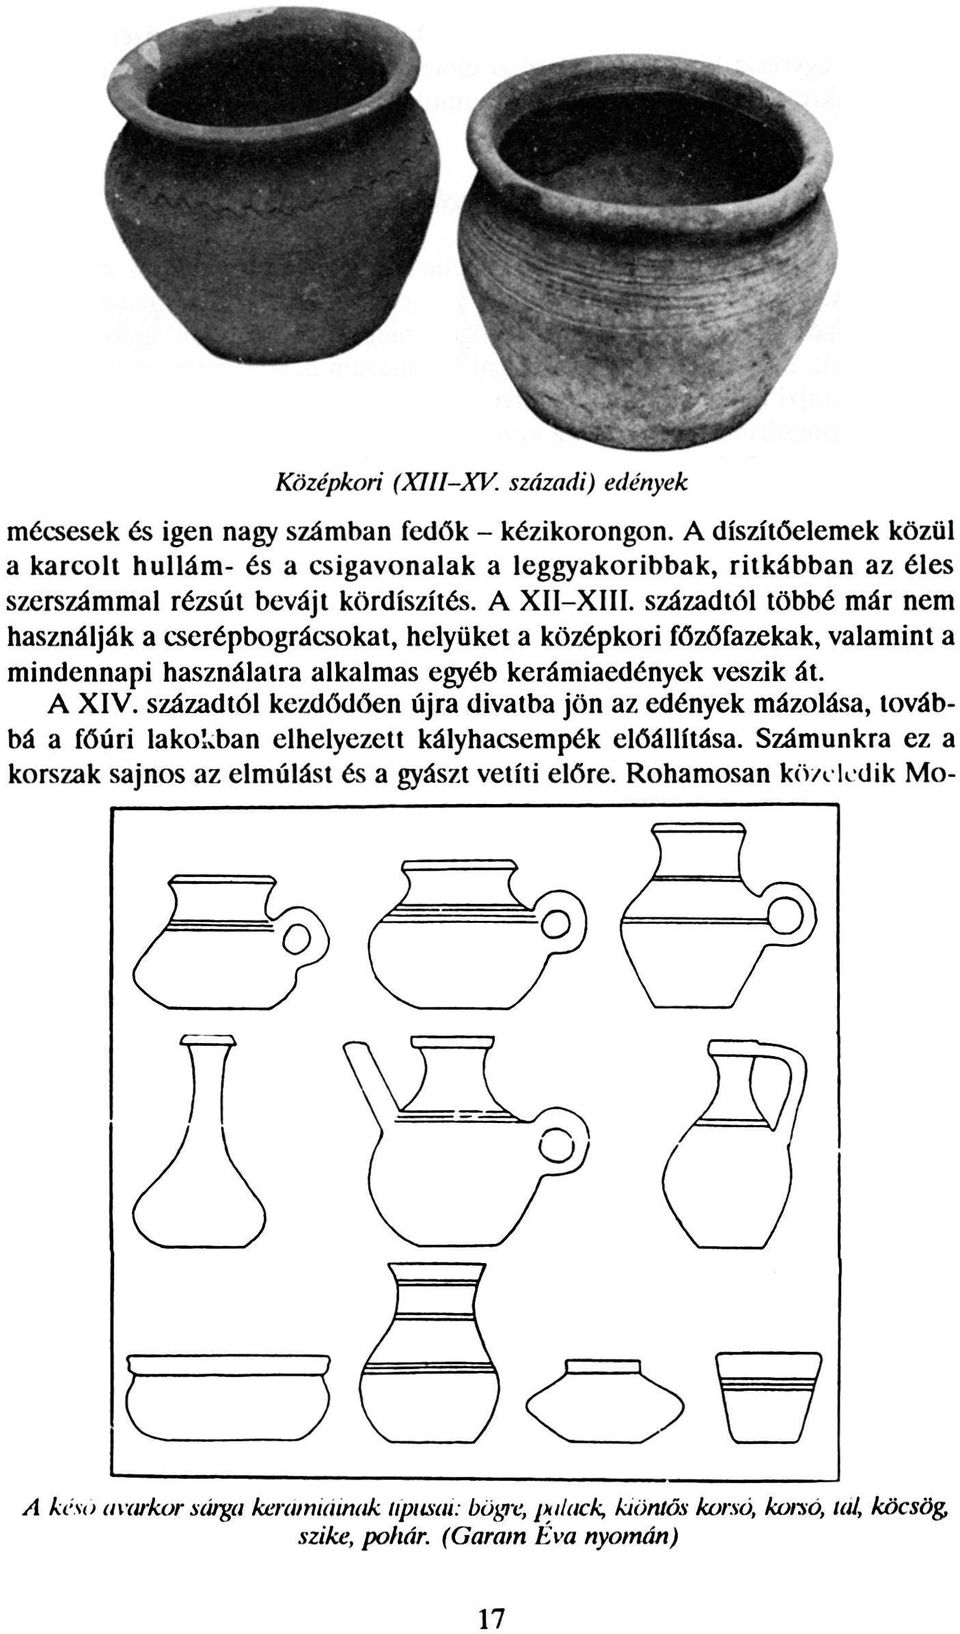 századtól többé már nem használják a cserépbográcsokat, helyüket a középkori főzőfazekak, valamint a mindennapi használatra alkalmas egyéb kerámiaedények veszik át. A XIV.